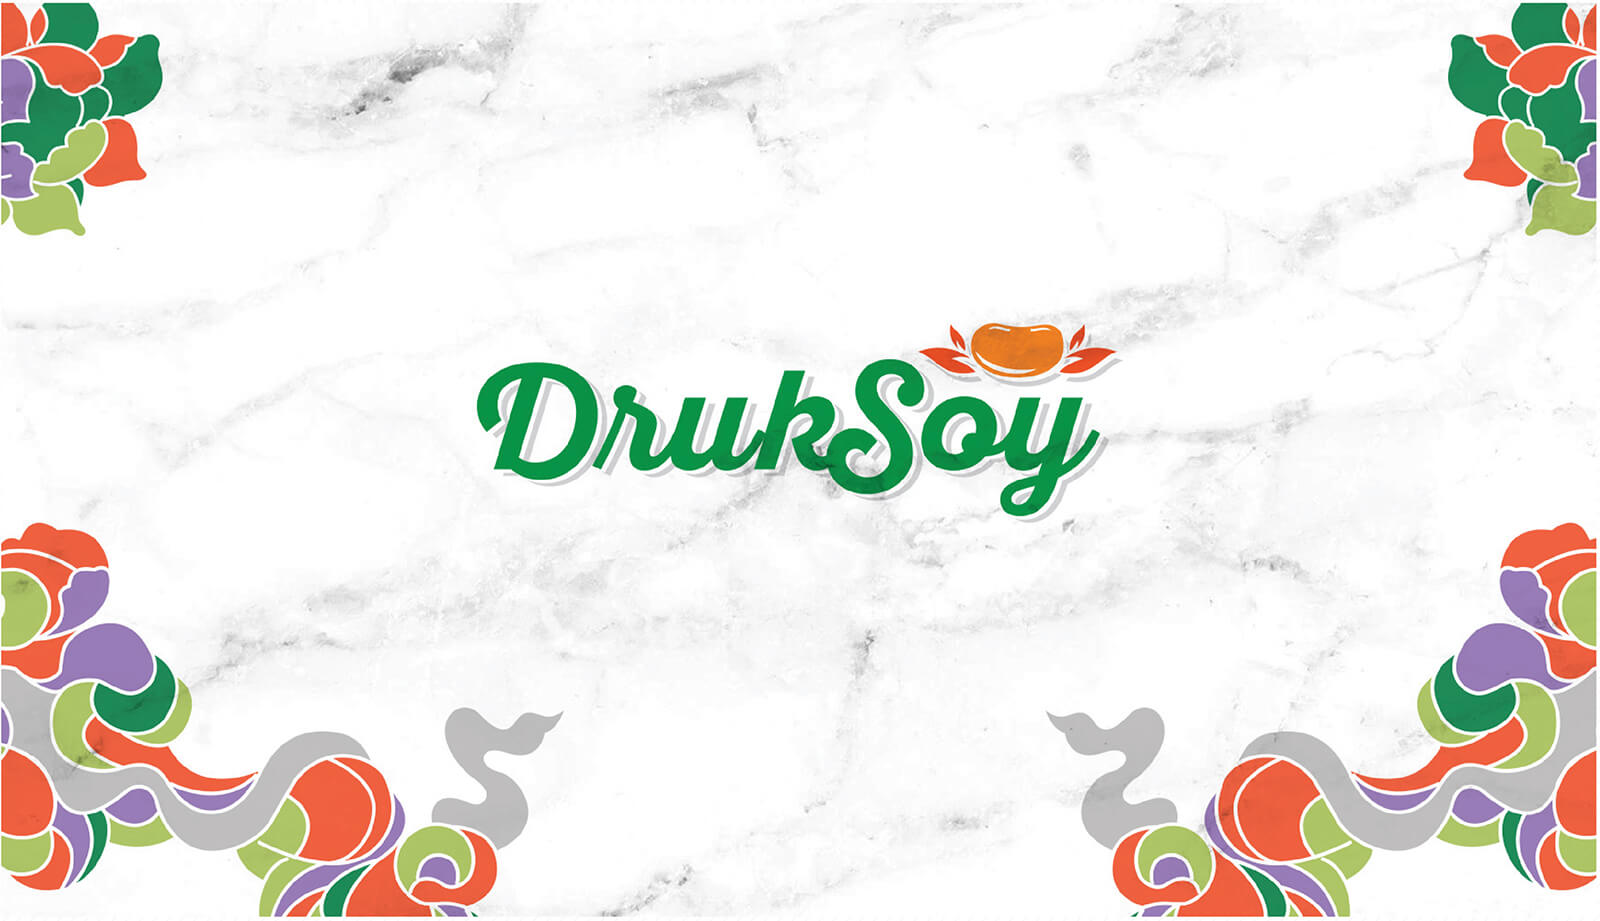 Druksoy - Green Goose Design